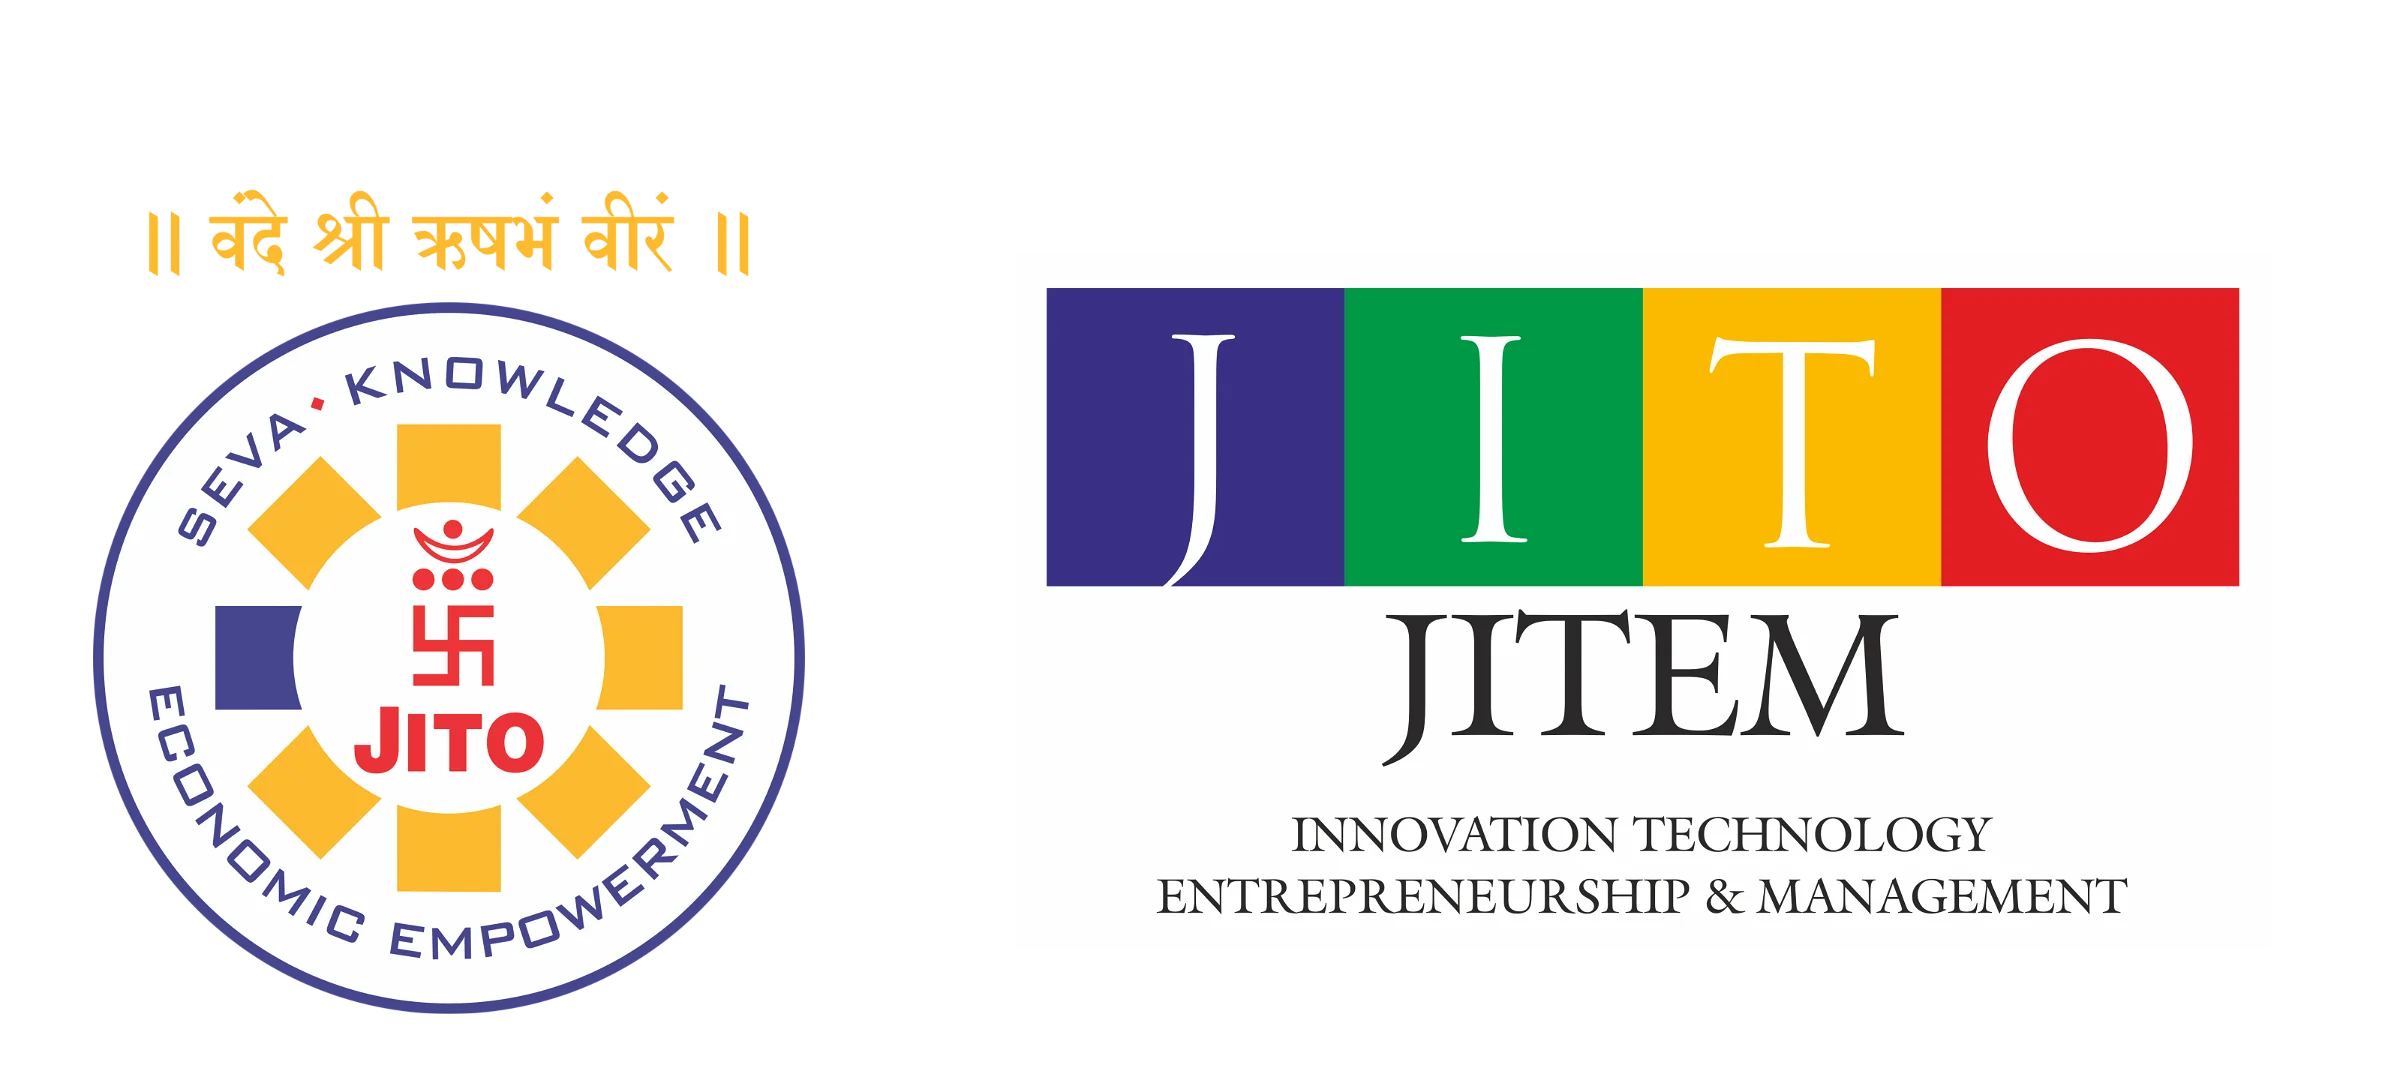 JITO JITEM –  INNOVATION TECHNOLOGY ENTREPRENEURSHIP  MANAGEMENT | JITOJITEM.COM